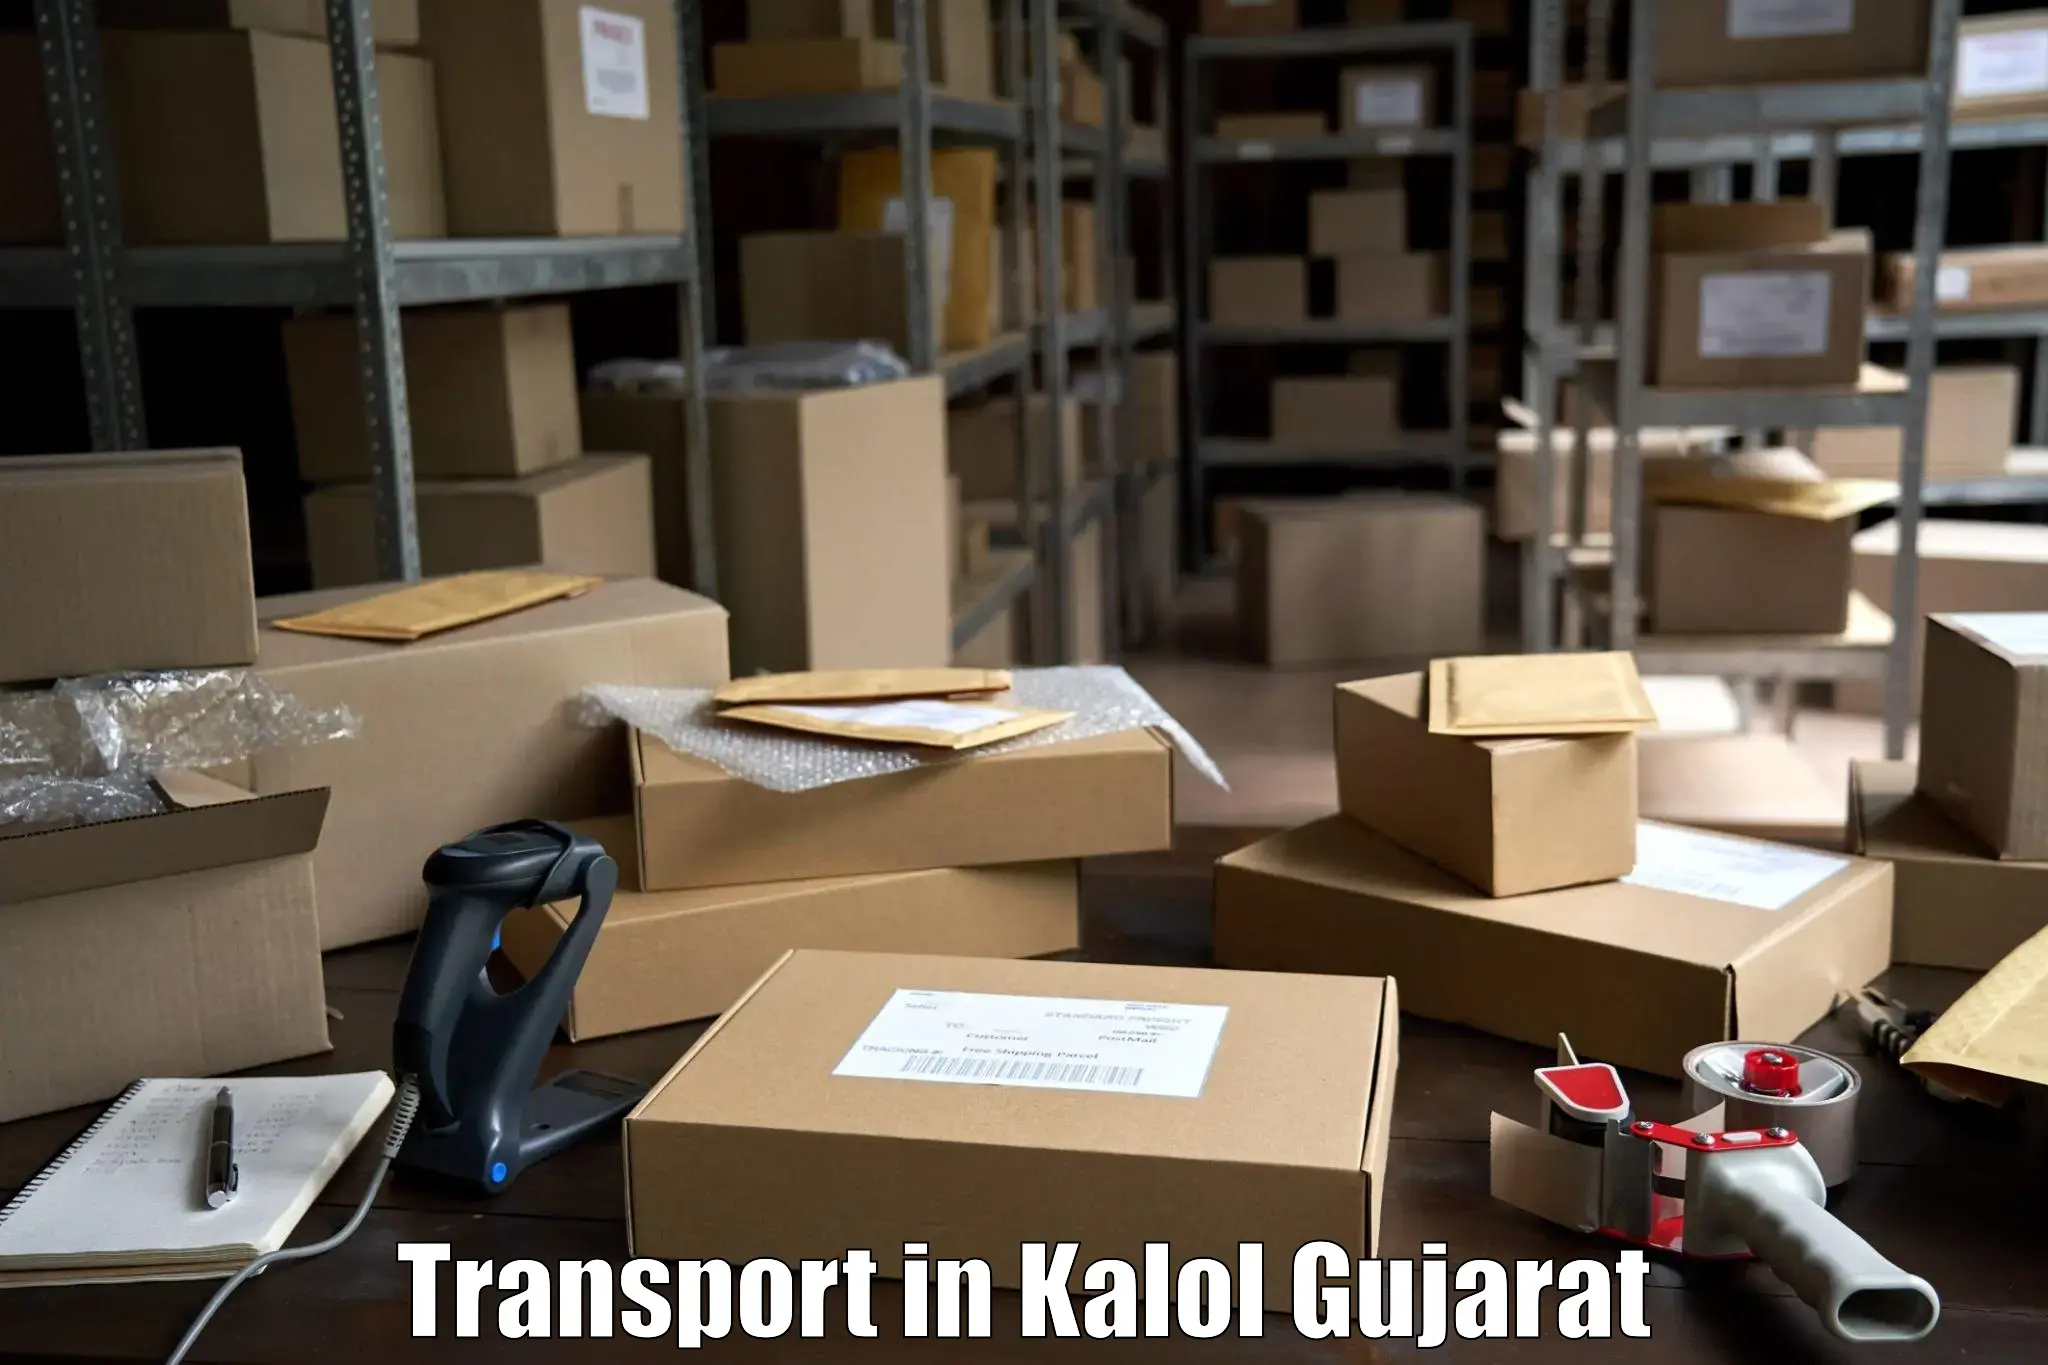 Cargo transportation services in Kalol Gujarat